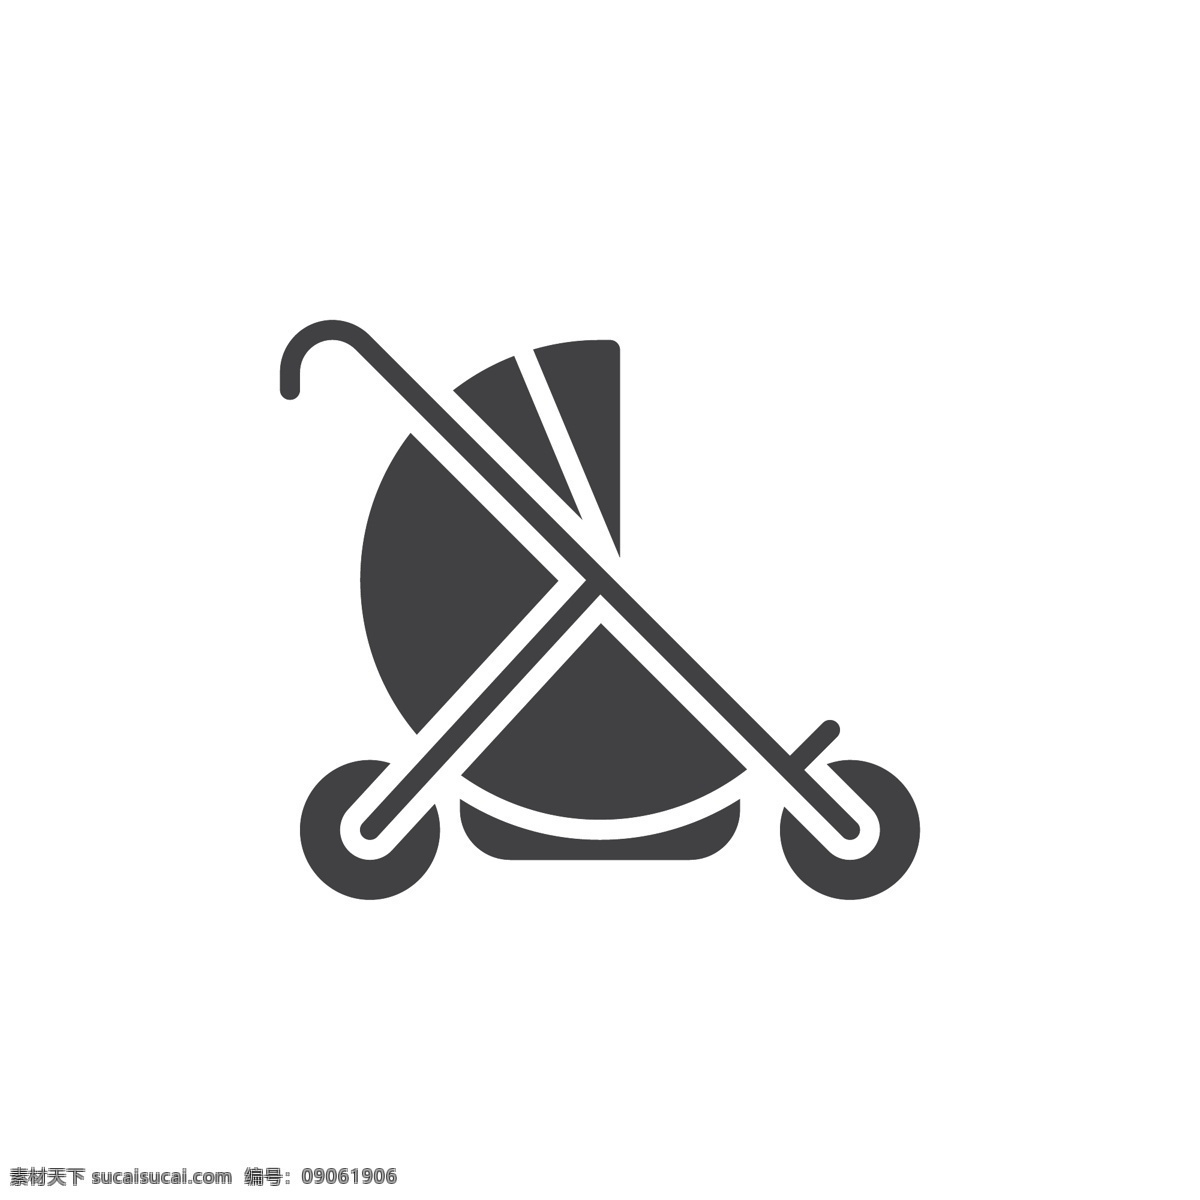 婴儿车 logo 标志 图标 婴儿车标志 婴儿车图标 icon 小推车设计 小推车 儿童车标志 婴儿椅标志 儿童座椅图标 婴儿车商标 标志图标 其他图标